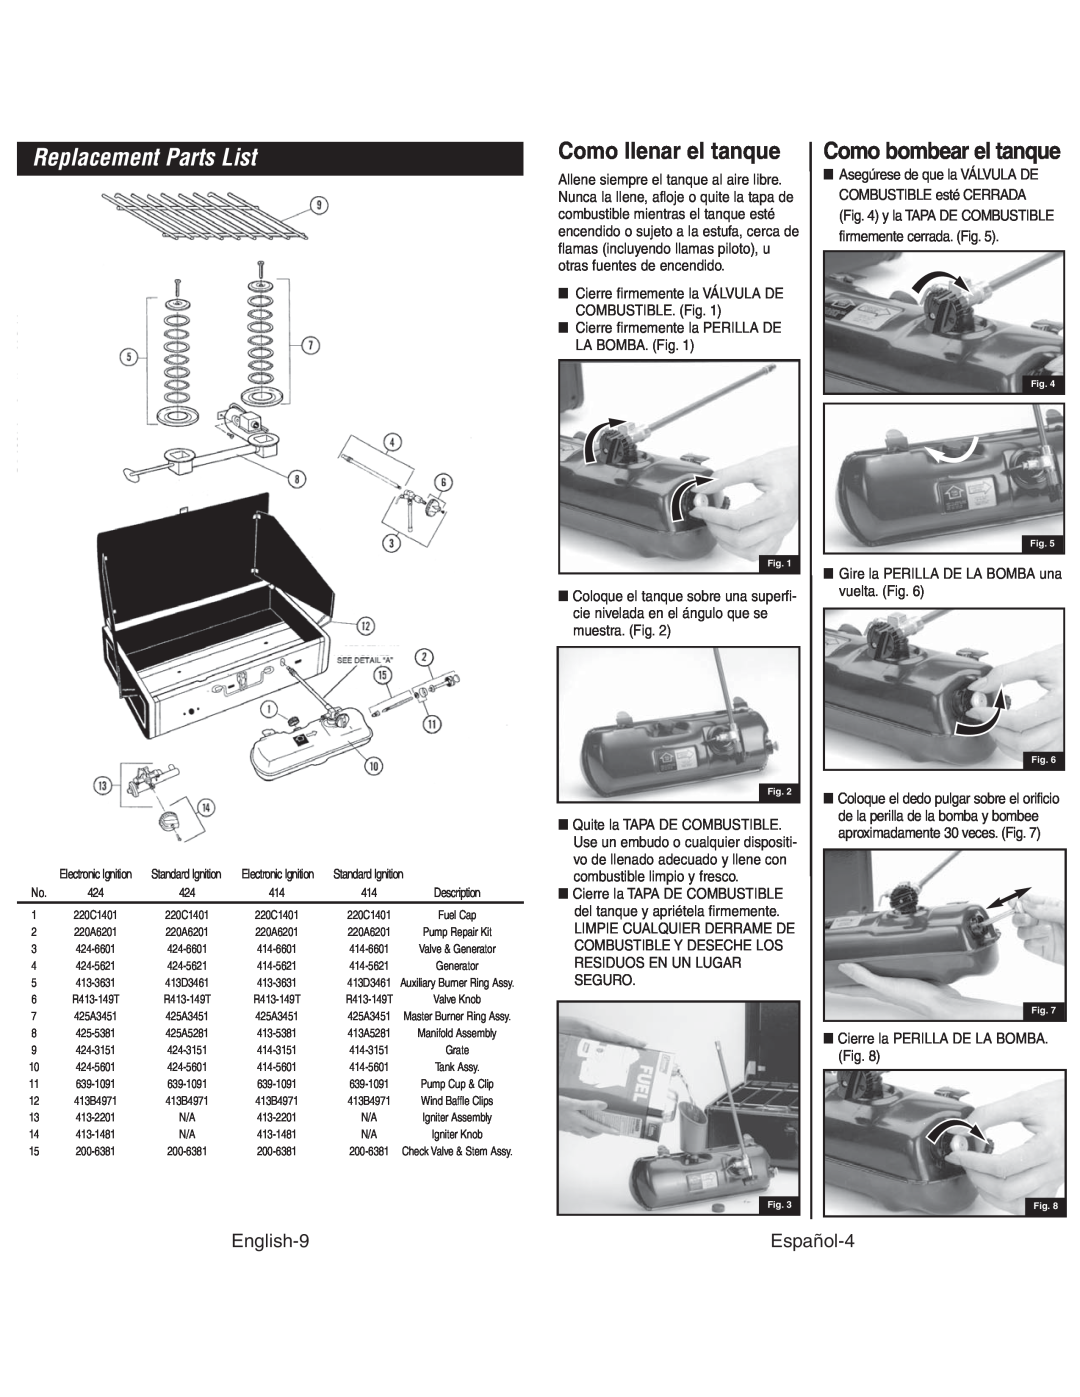 Coleman 4010003804 Replacement Parts List, Como llenar el tanque, Como bombear el tanque, English-9, Español-4 